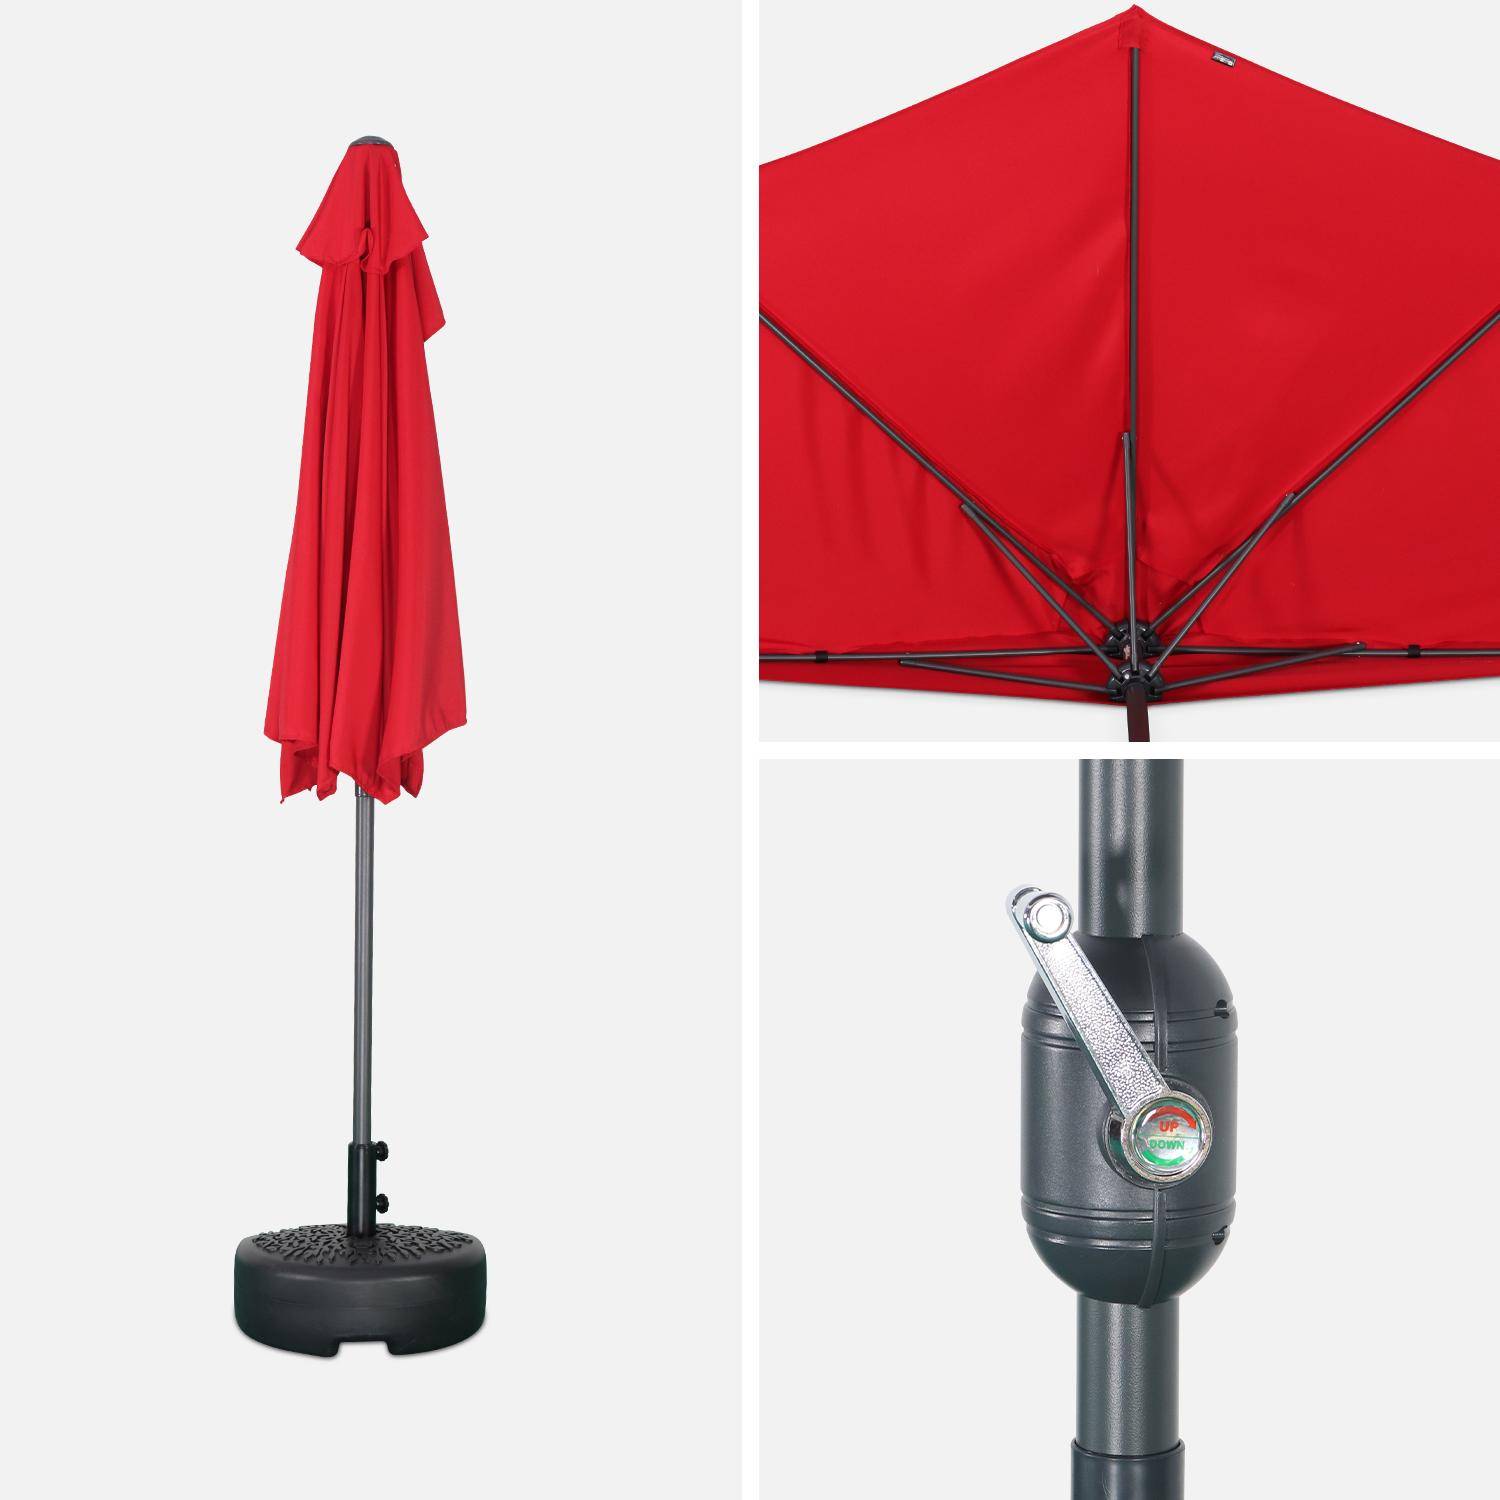  Parasol para balcón Ø250cm  – CALVI – Pequeño parasol recto, mástil en aluminio con manivela, tela color rojo Photo5